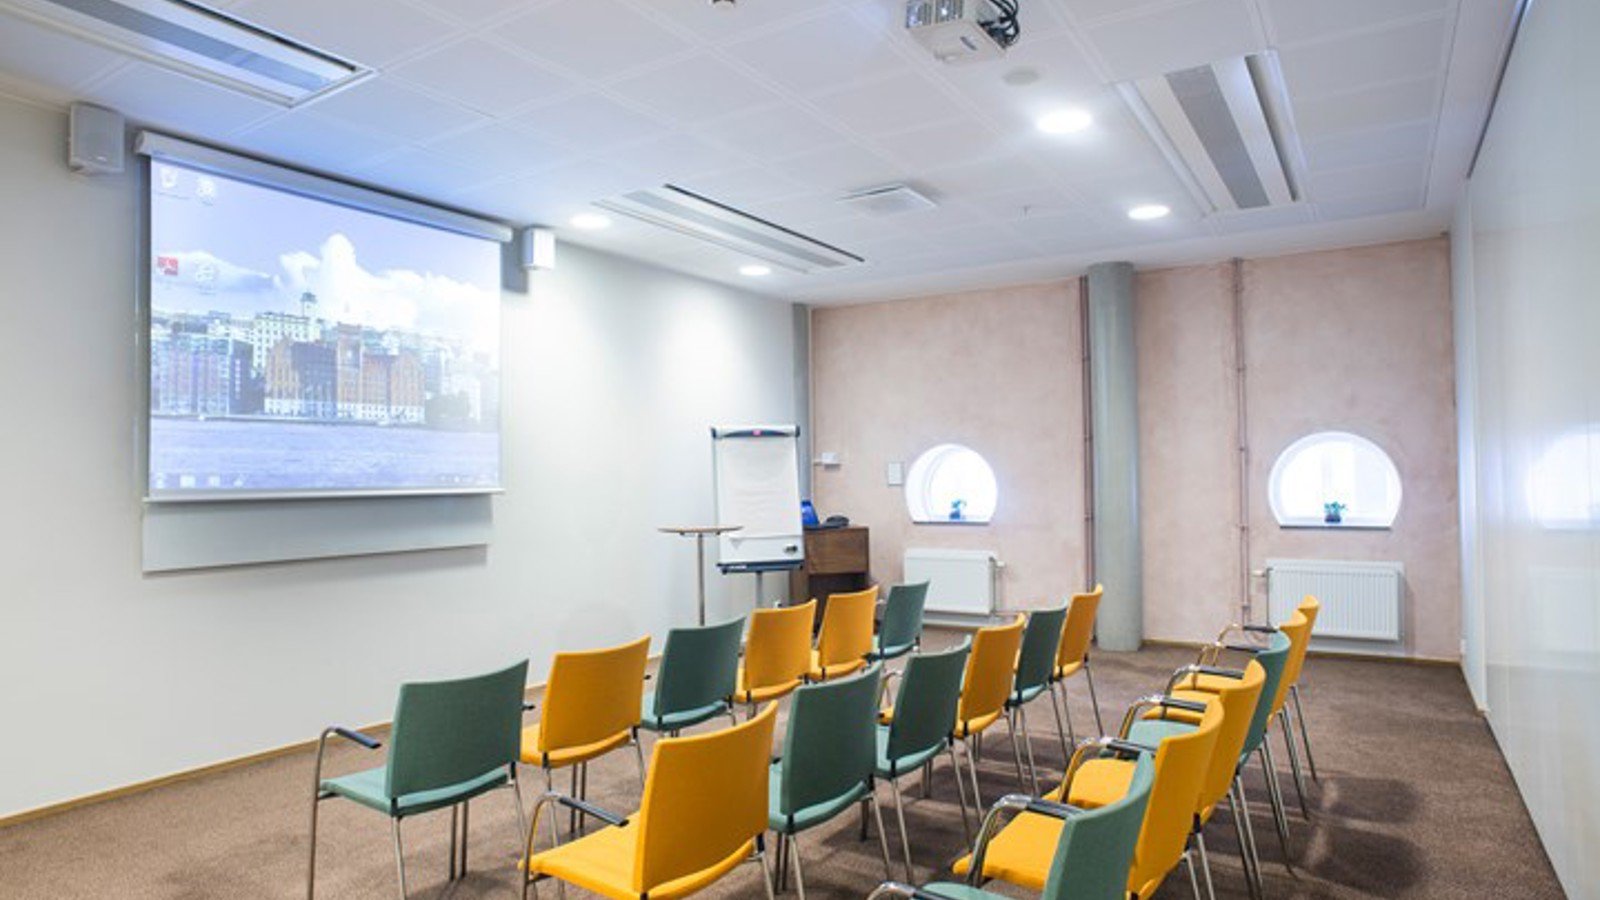 Konferensrum med biosittning, gula och blå stolar, vita väggar och projektor